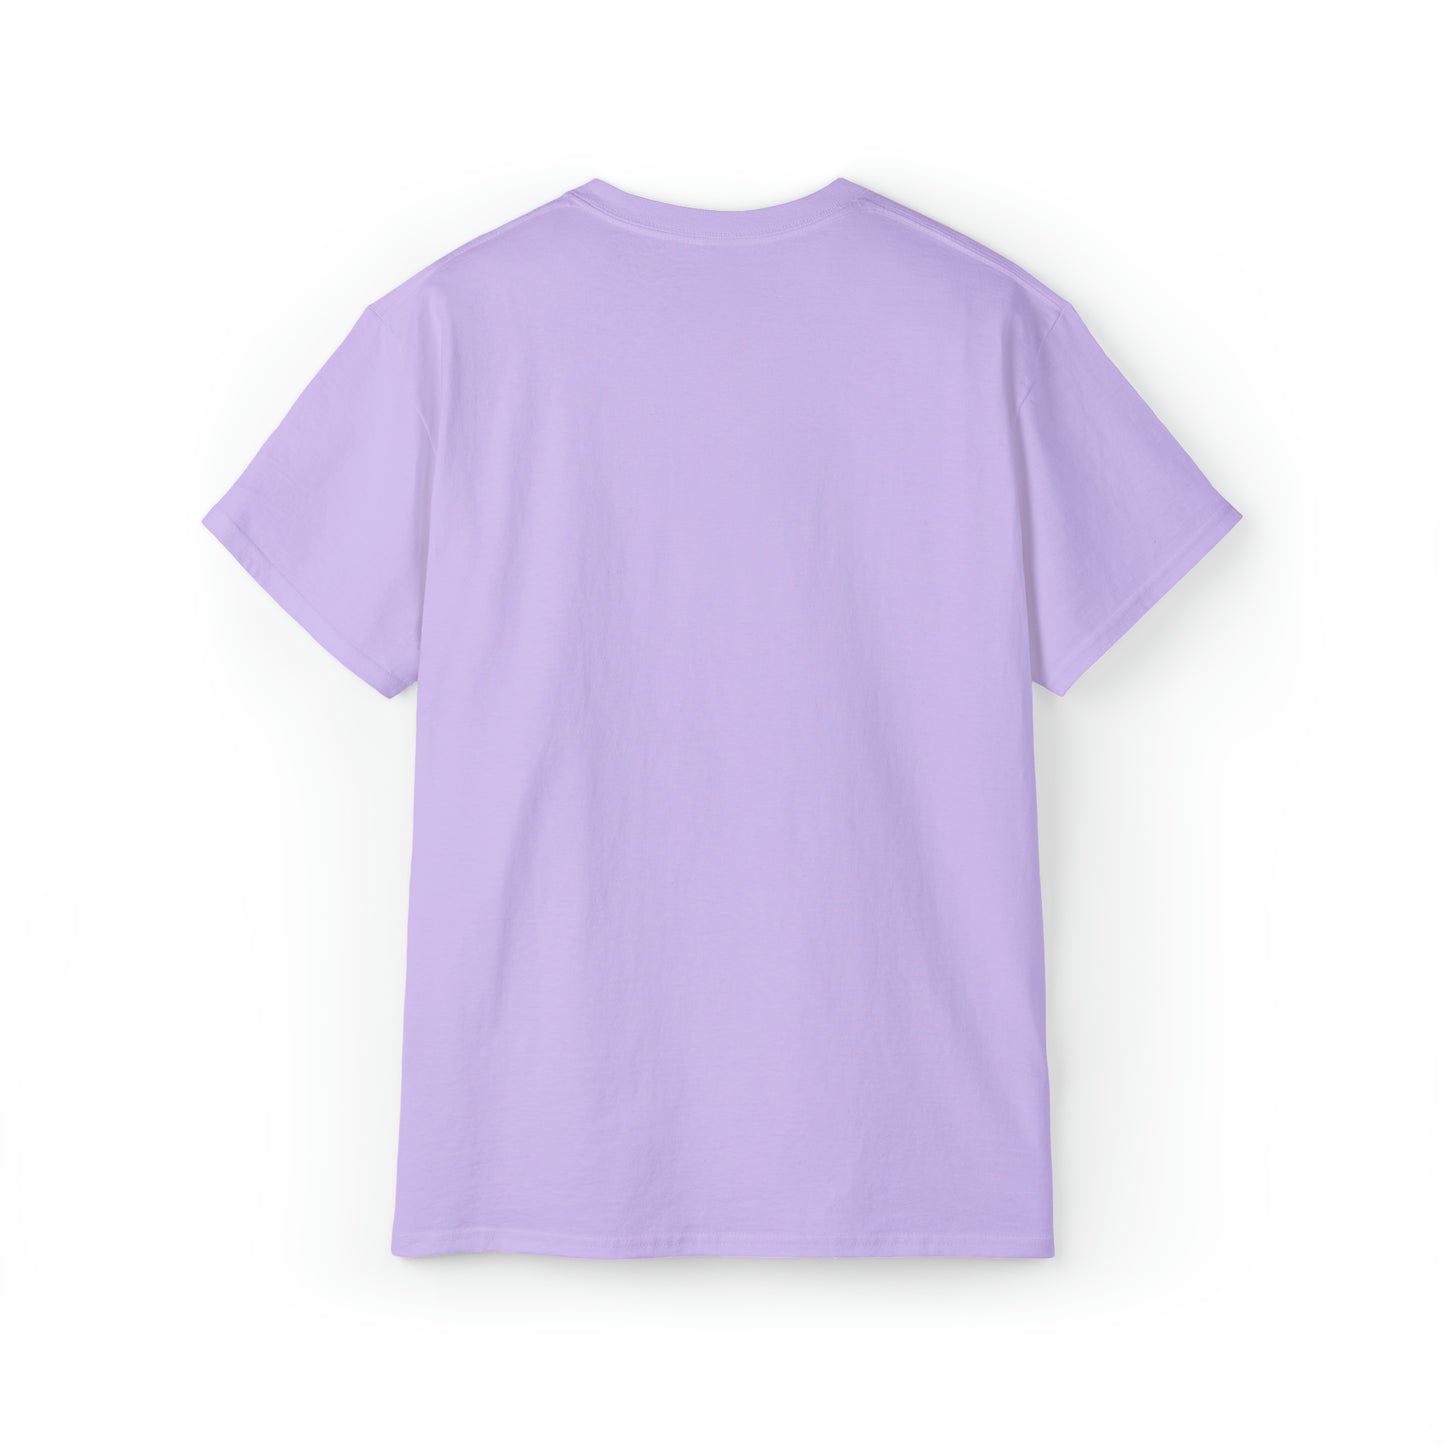 JOY (pink purple)  Unisex Ultra Cotton Tee